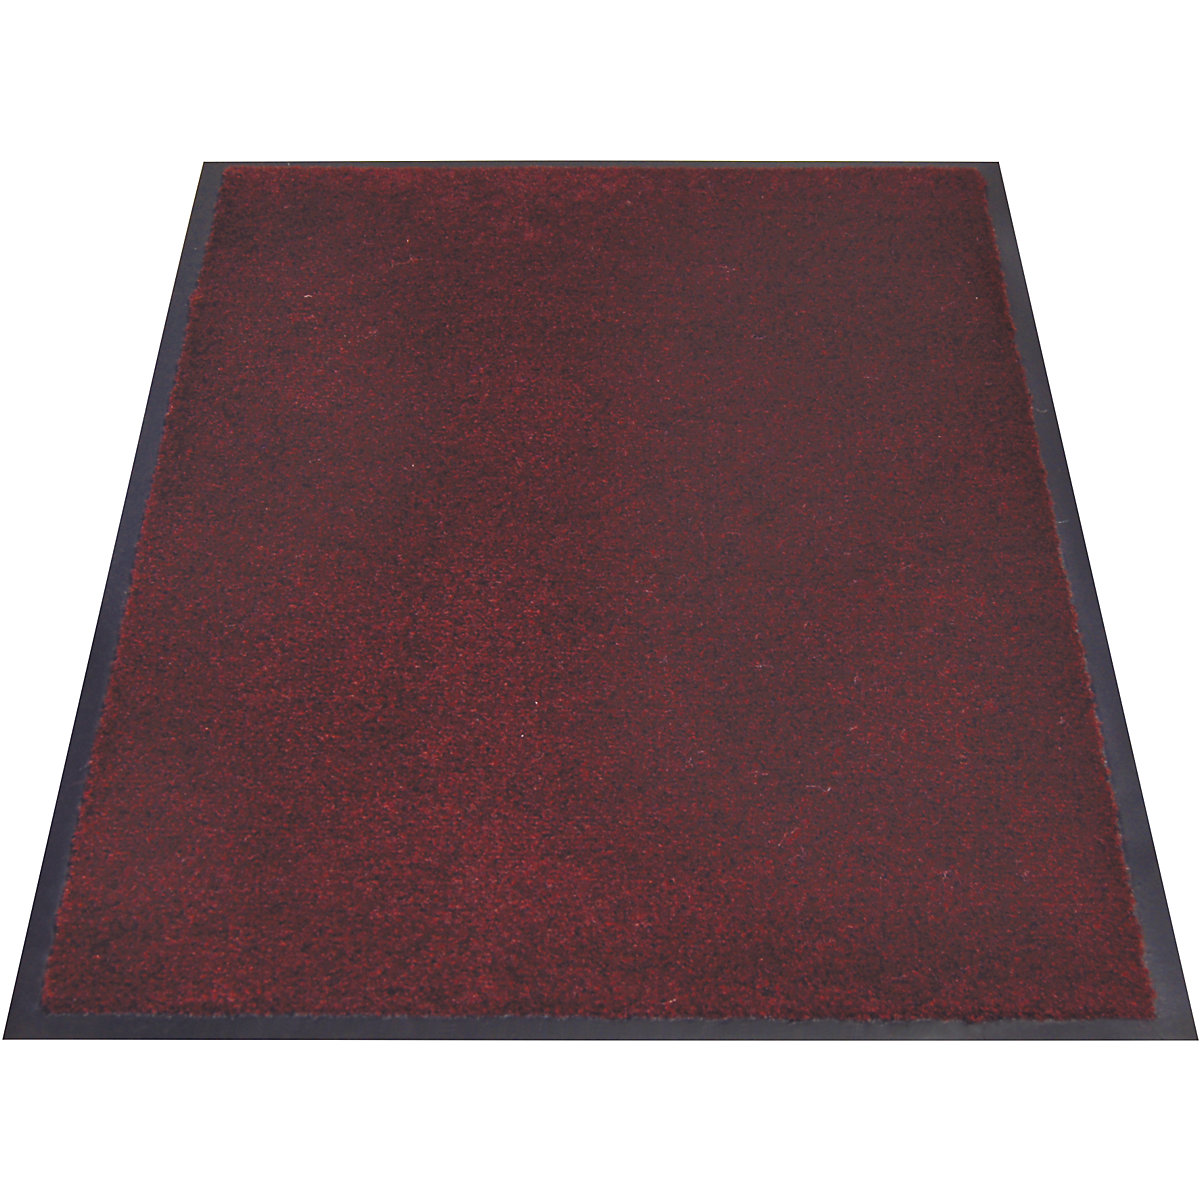 Covoraș pentru reținerea impurităților EAZYCARE AQUA, lung. x lăț. 900 x 600 mm, roșu